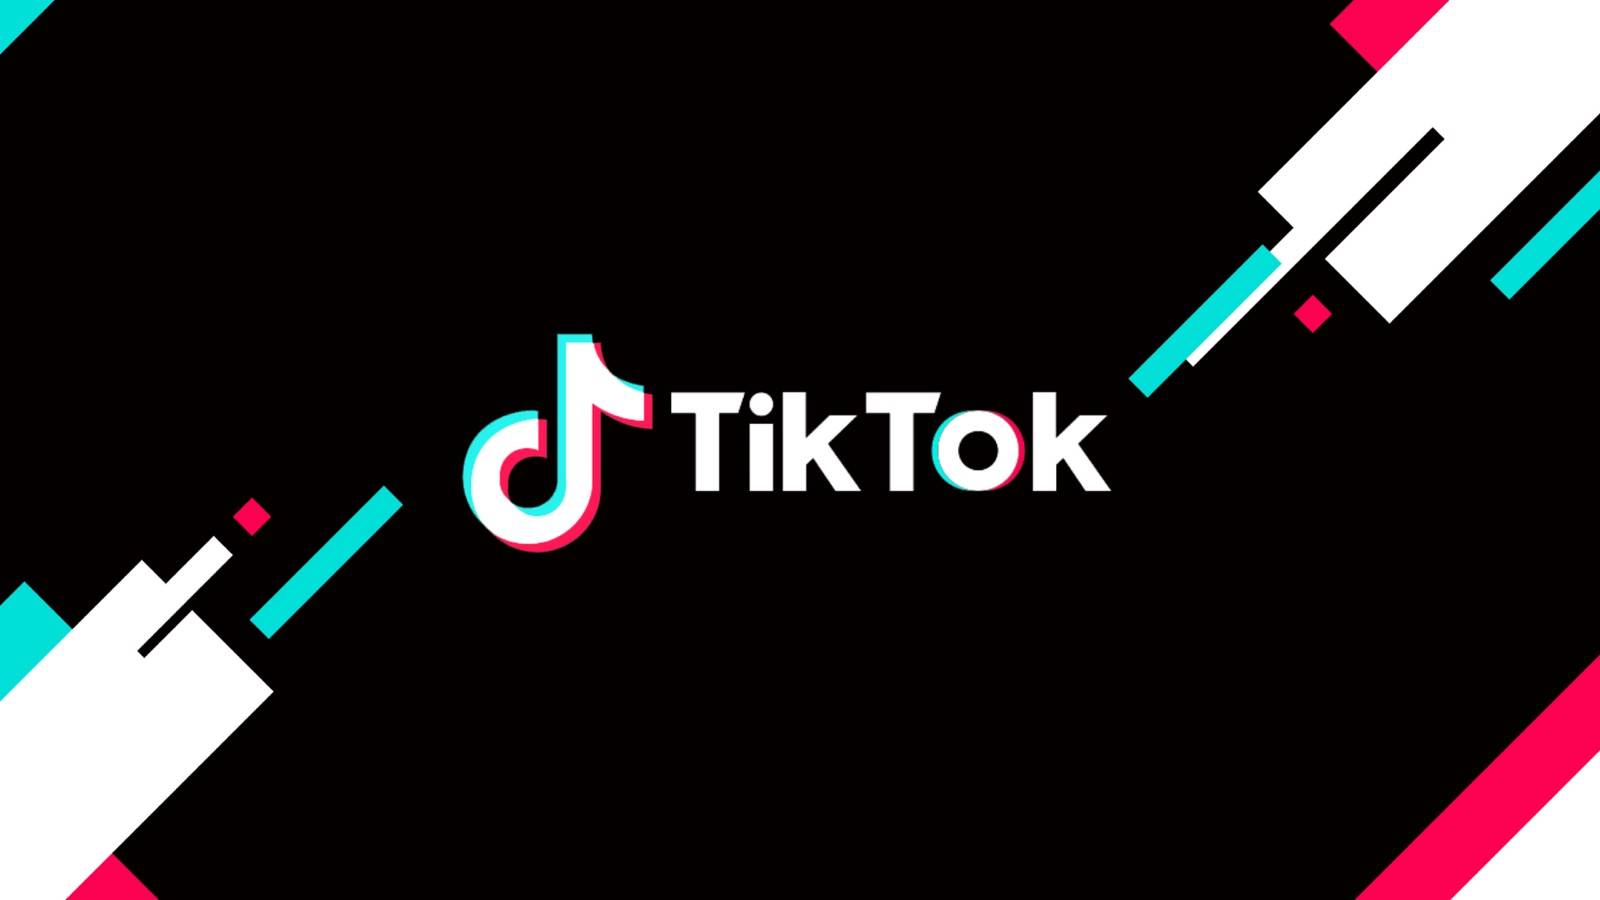 TikTok-update brengt veranderingen aan telefoons over de hele wereld